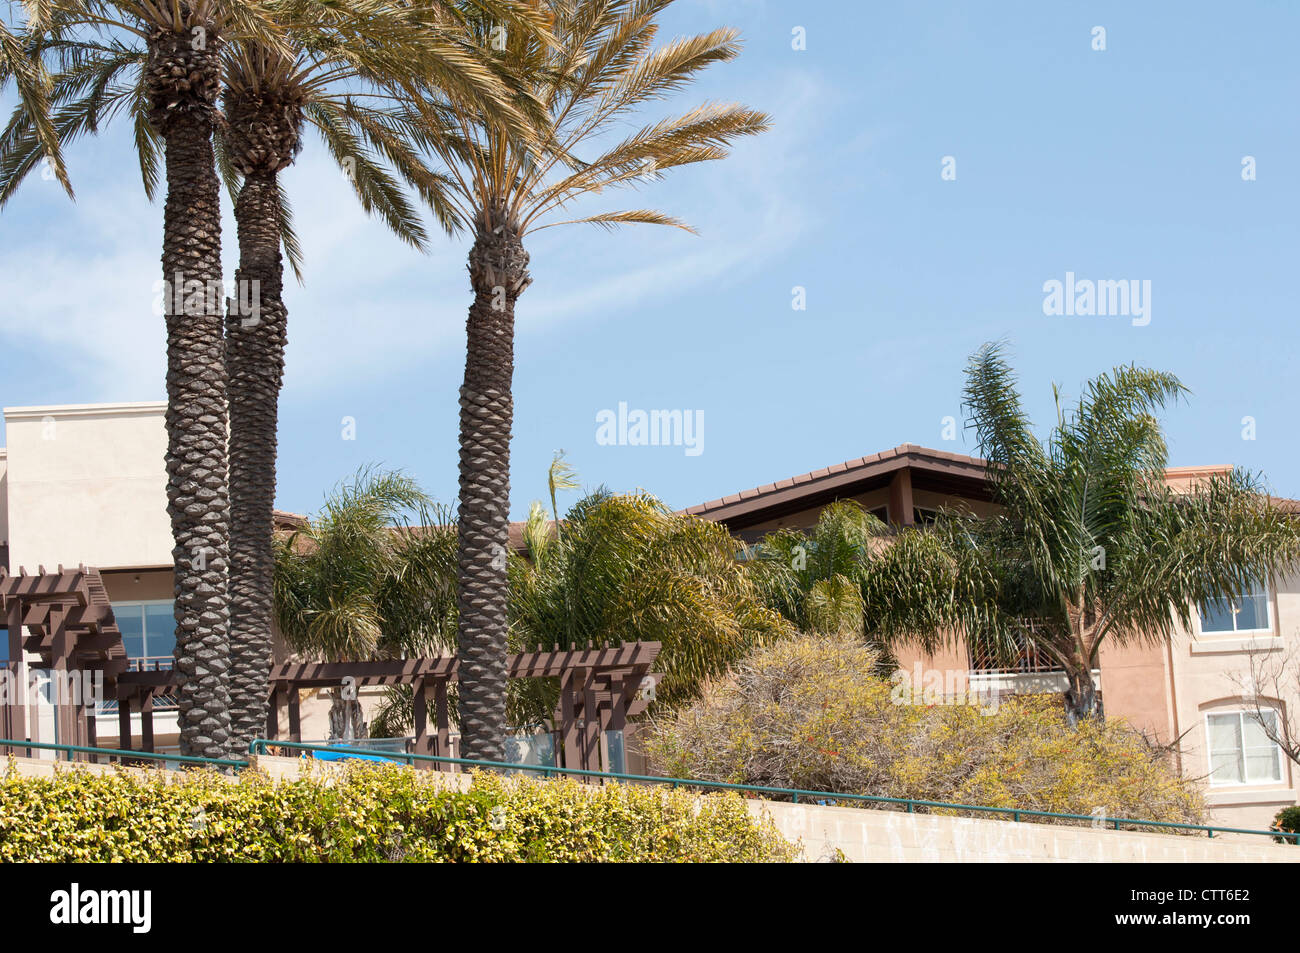 Casa de lujo y palmera en California Foto de stock